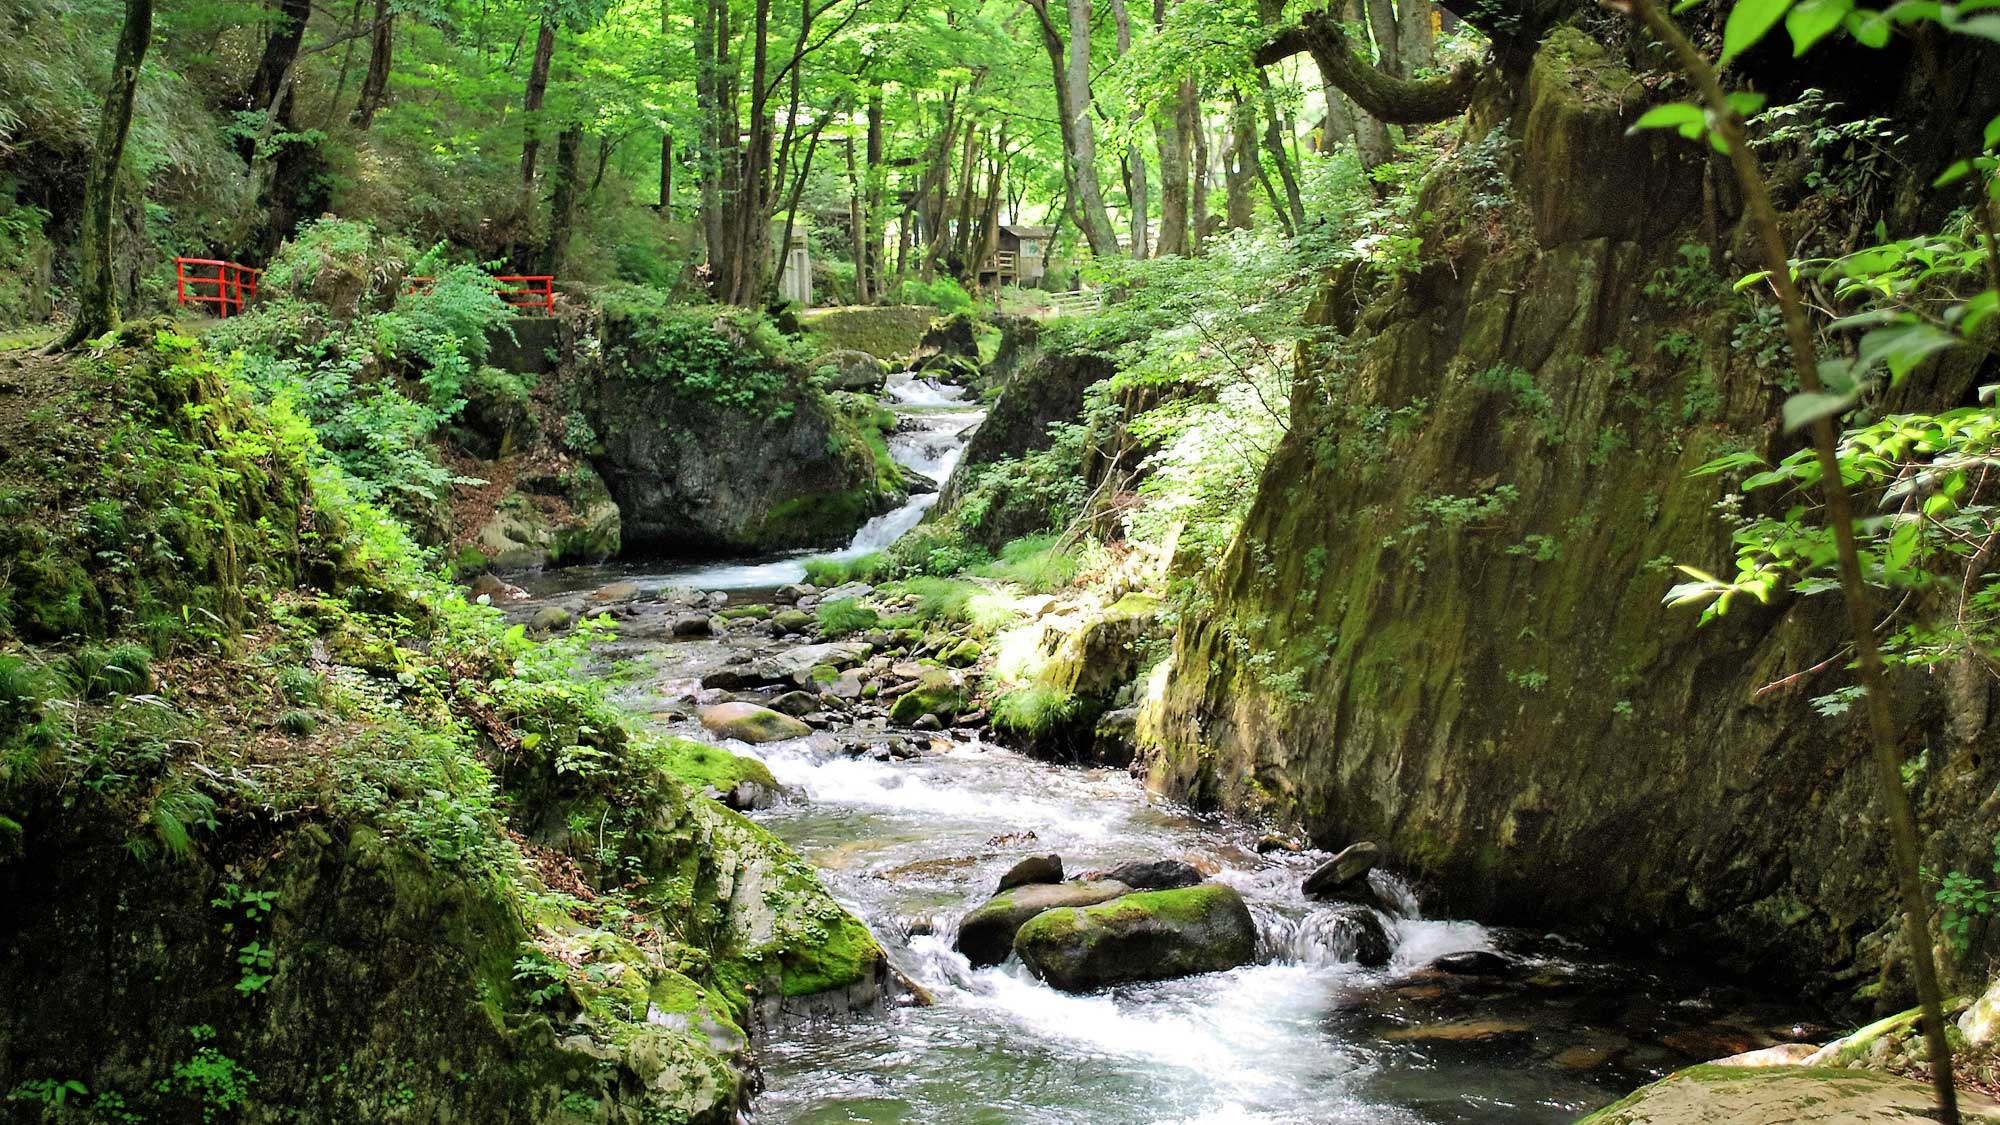 【周辺景観】龍泉洞の清水が流れる渓流も苔生して緑が深く絶景です。